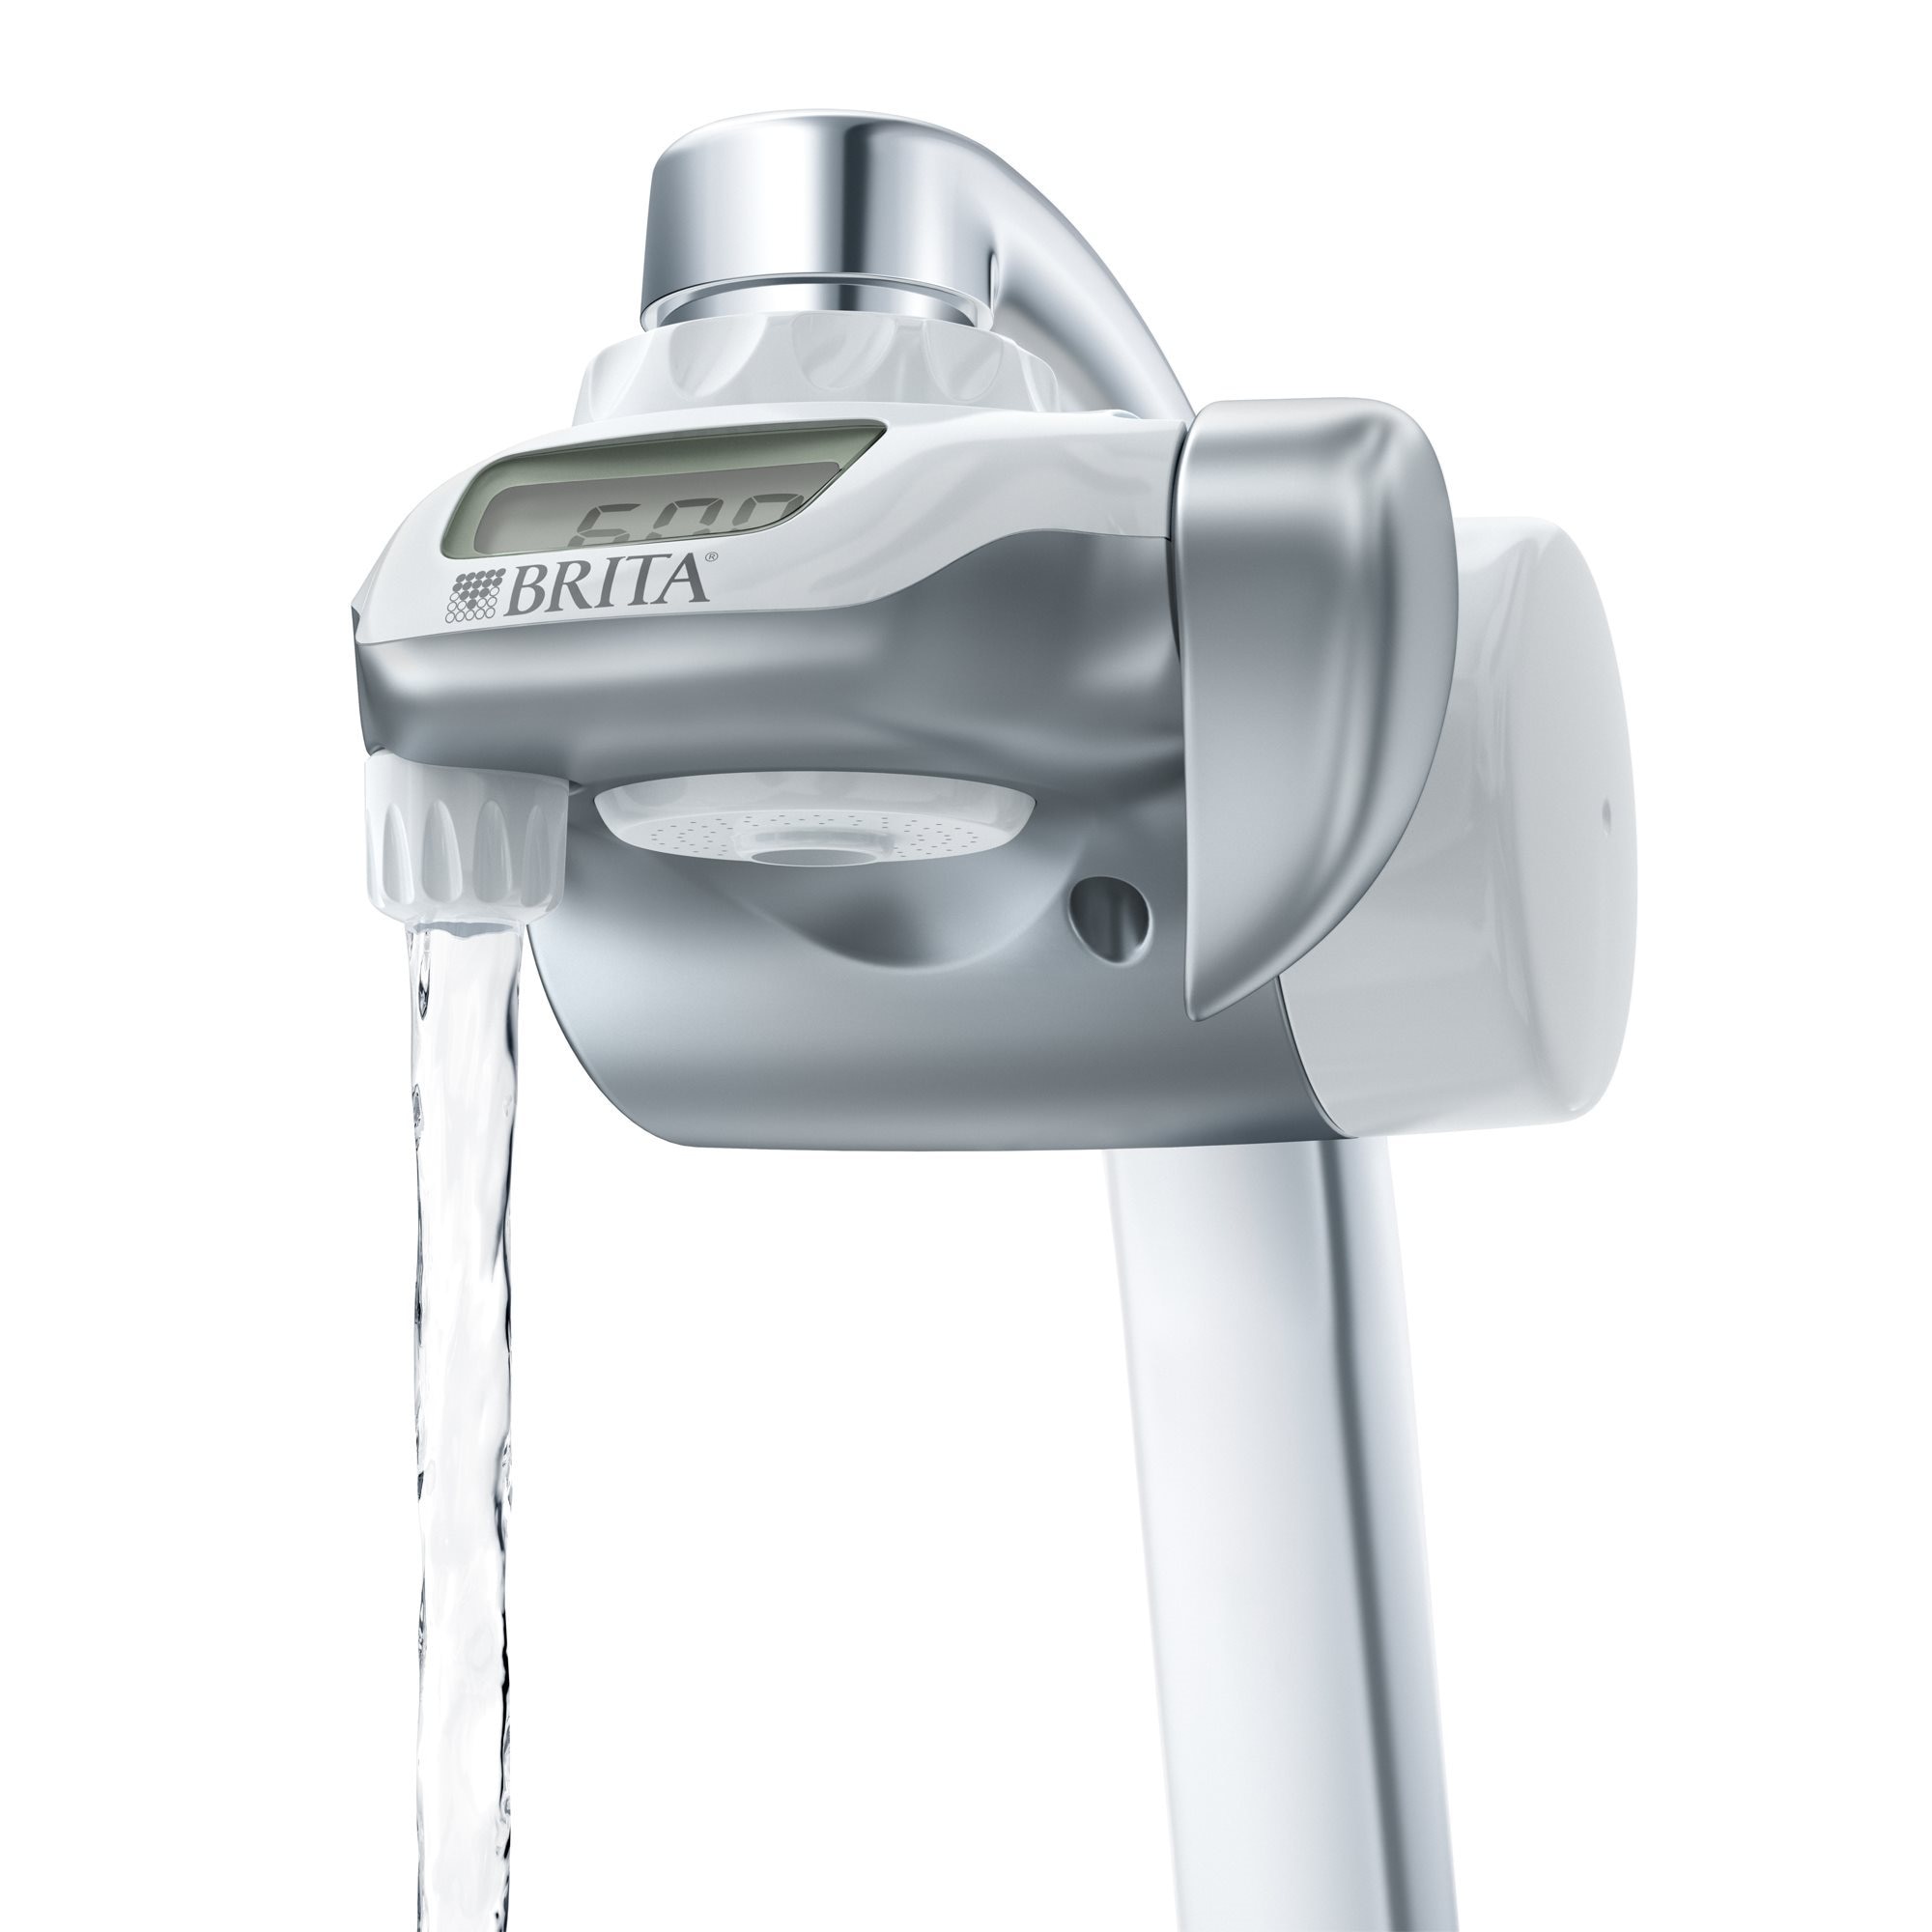 Filtre de rechange pour robinet Brita On Tap 600 litres 1037003